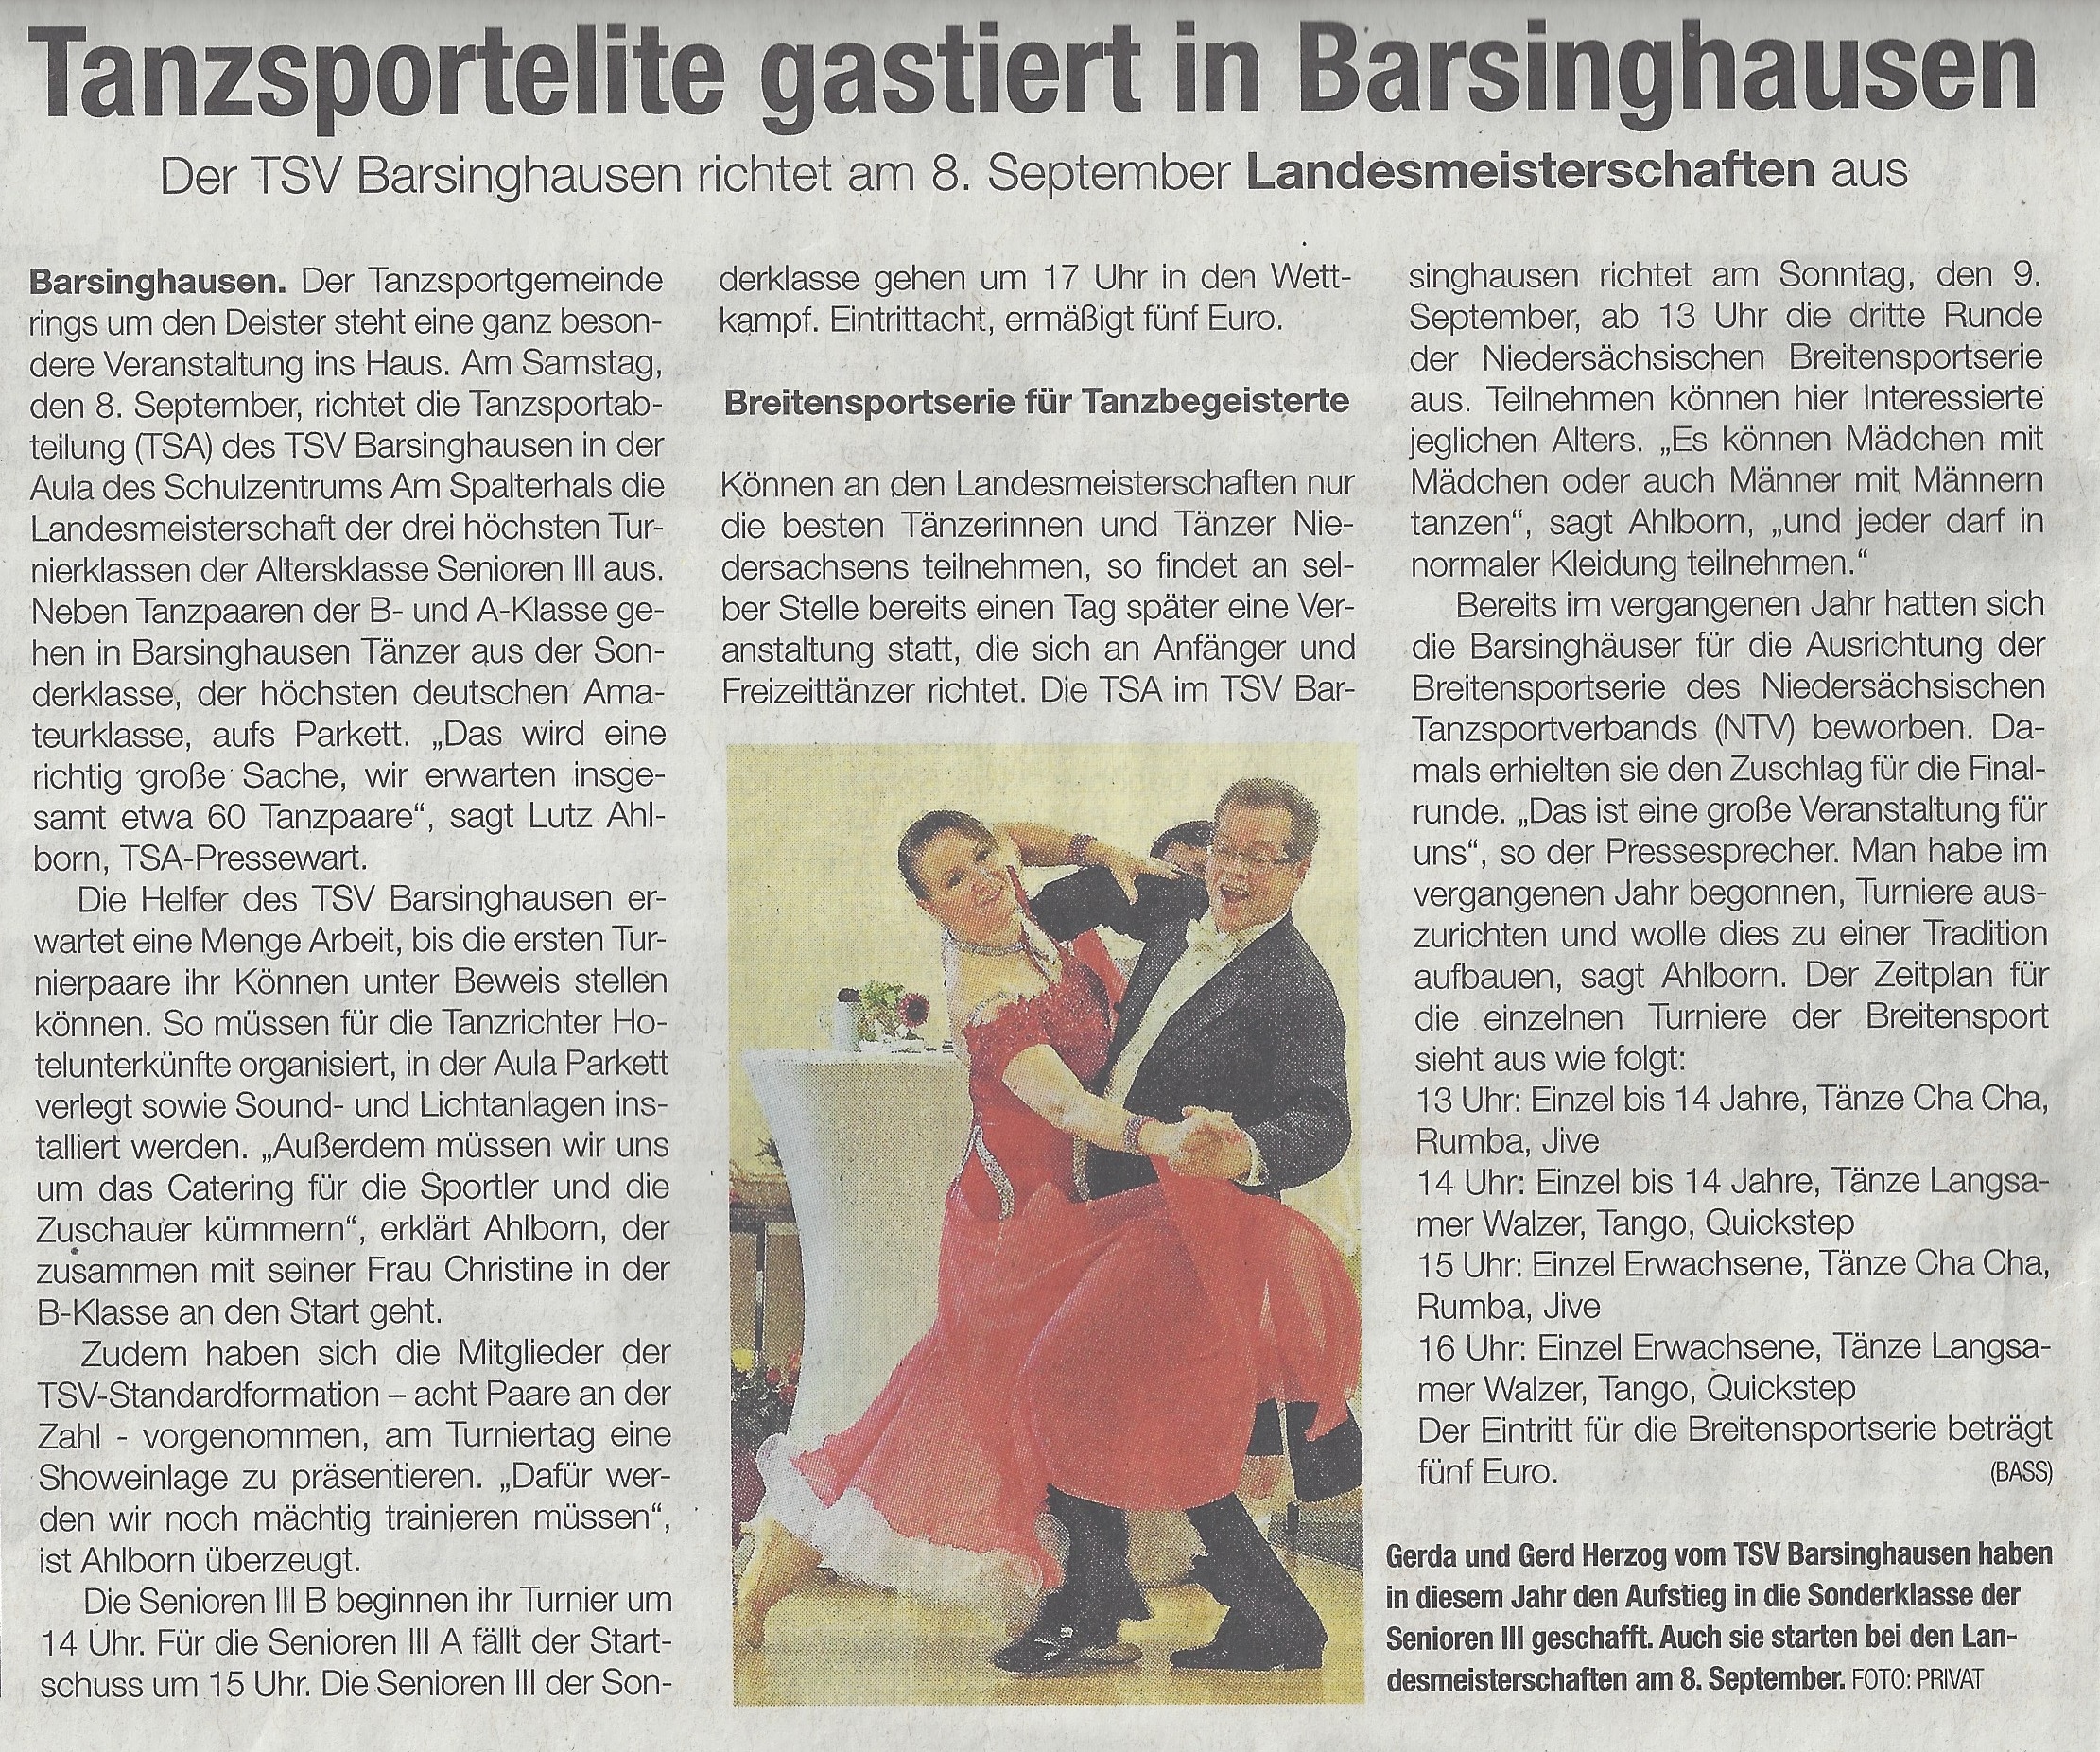 Landesmeisterschaften in Barsinghausen (Bild: Privat)